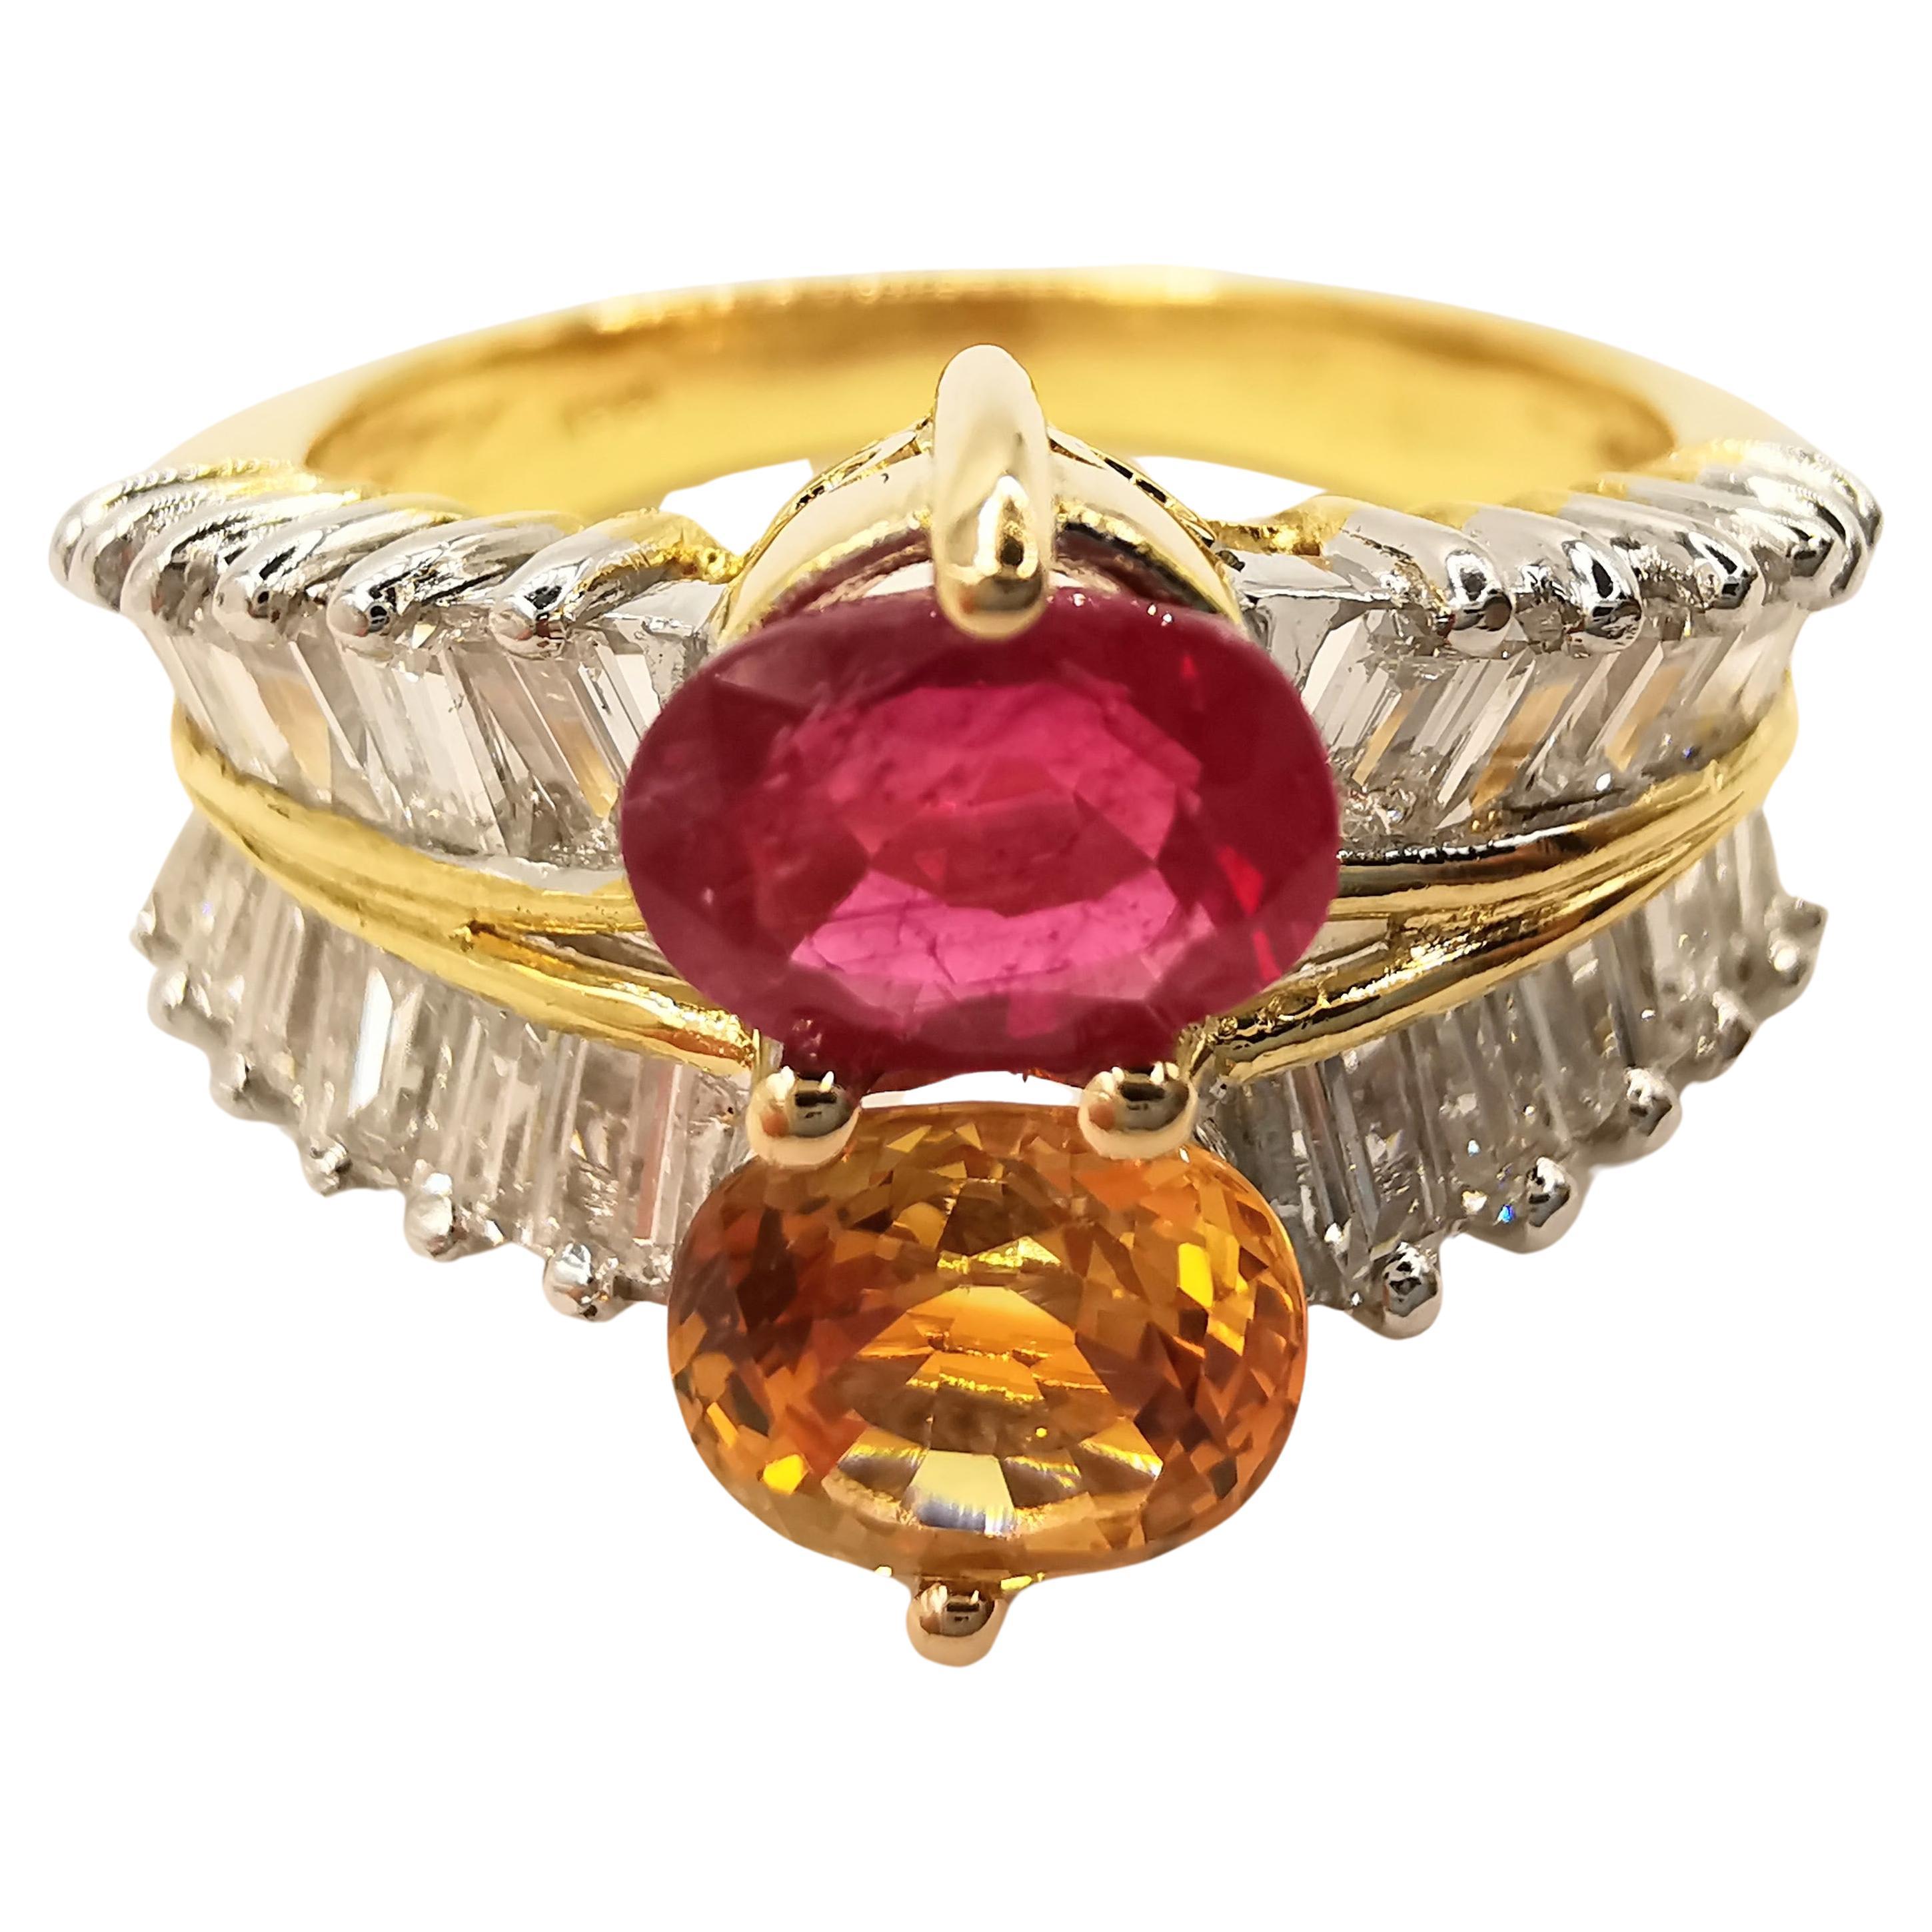 Bague vintage en or 20 carats avec rubis rouge ovale, citrine dorée et diamants baguettes